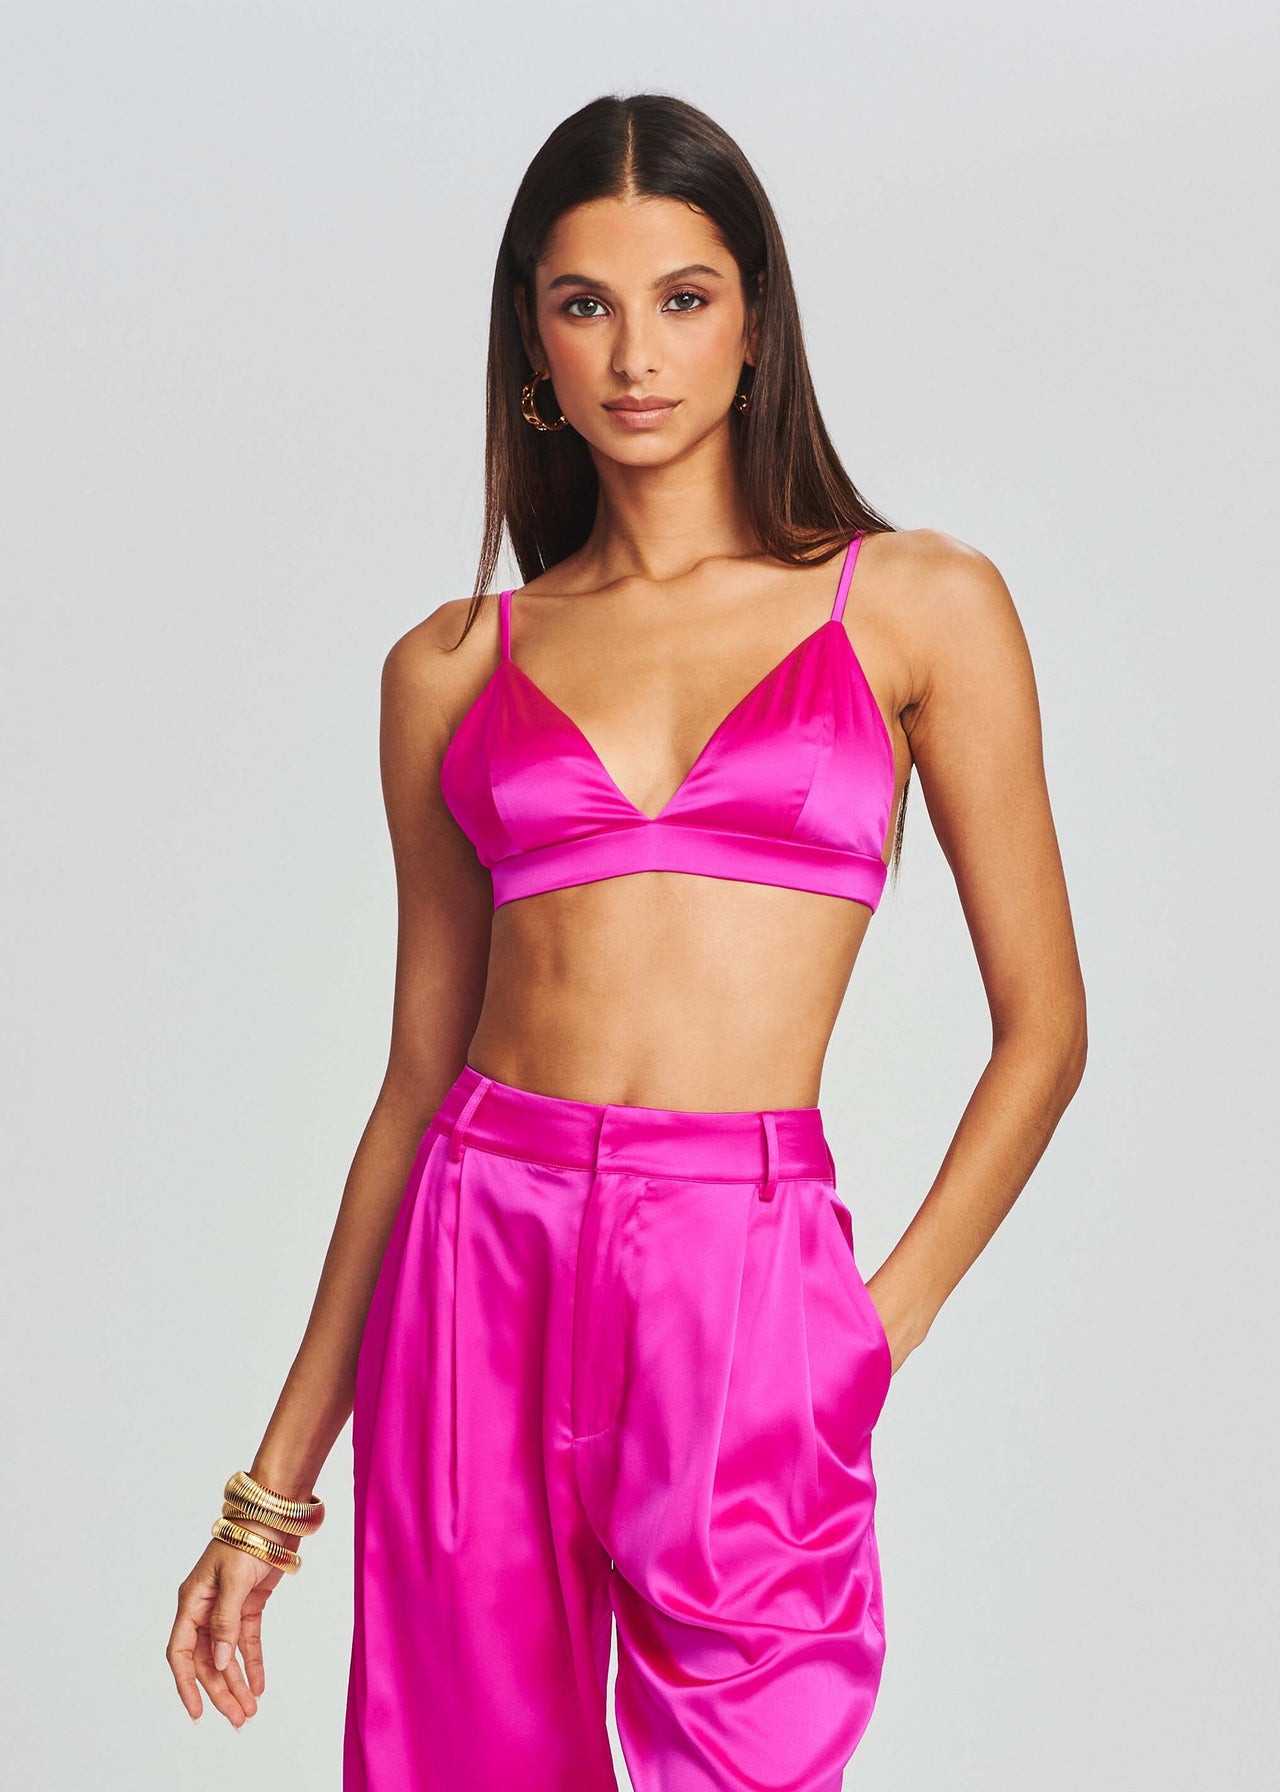 ZARA Silk Satin Crop Top Bralette Pink Size XS - $8 (68% Off Retail) - From  Tori